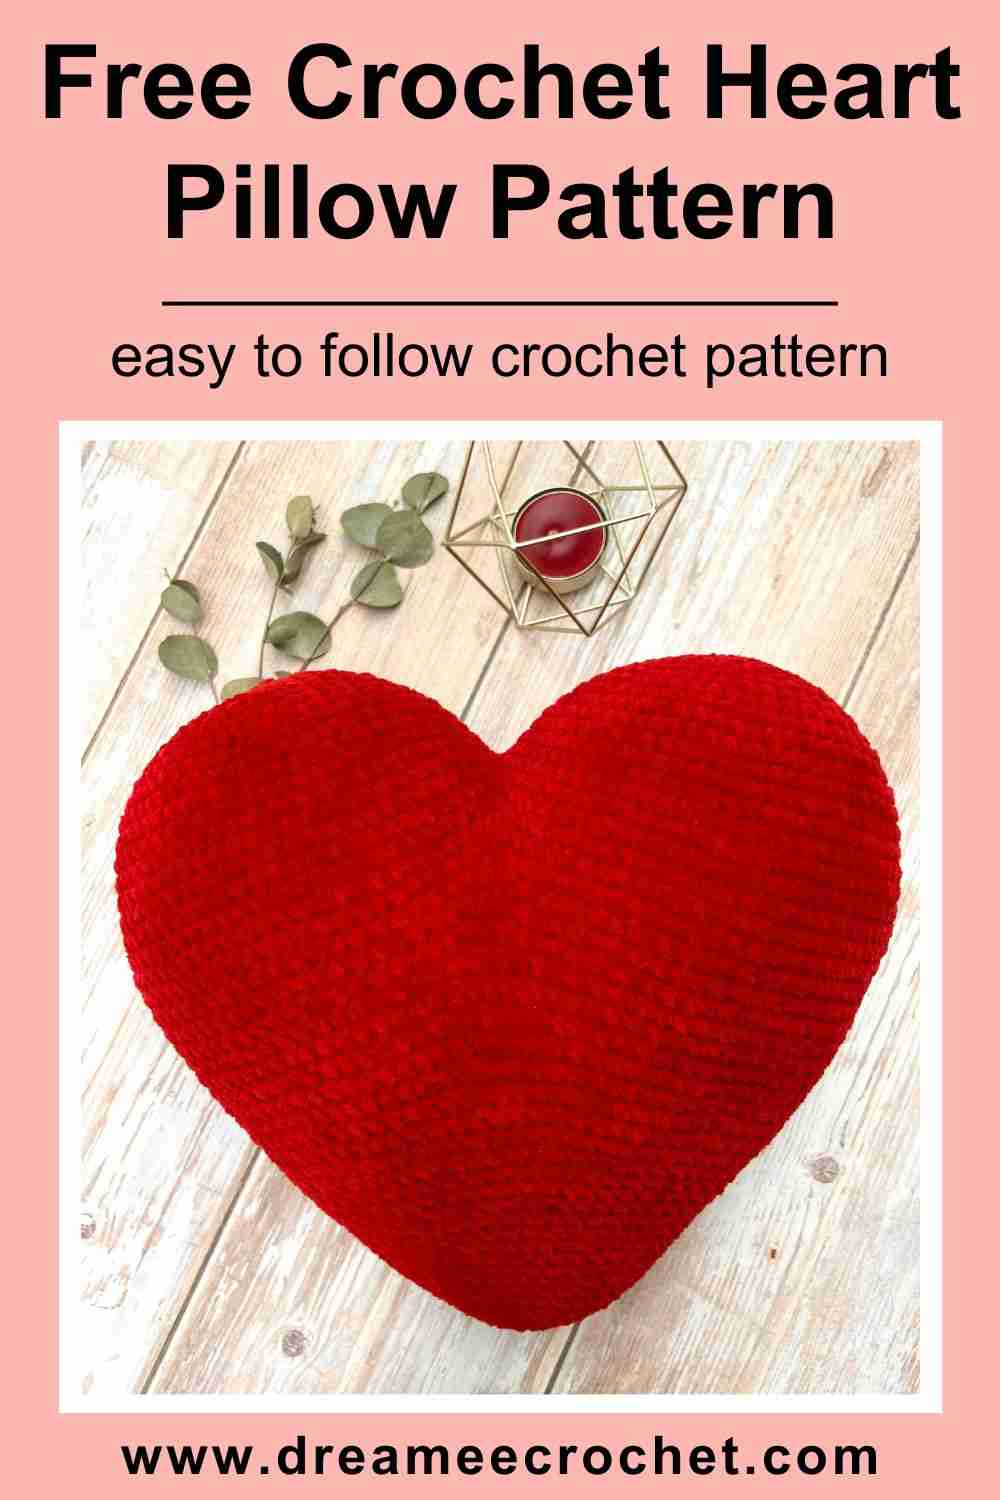 Free crochet heart pillow pattern, Free crochet heart cushion pattern